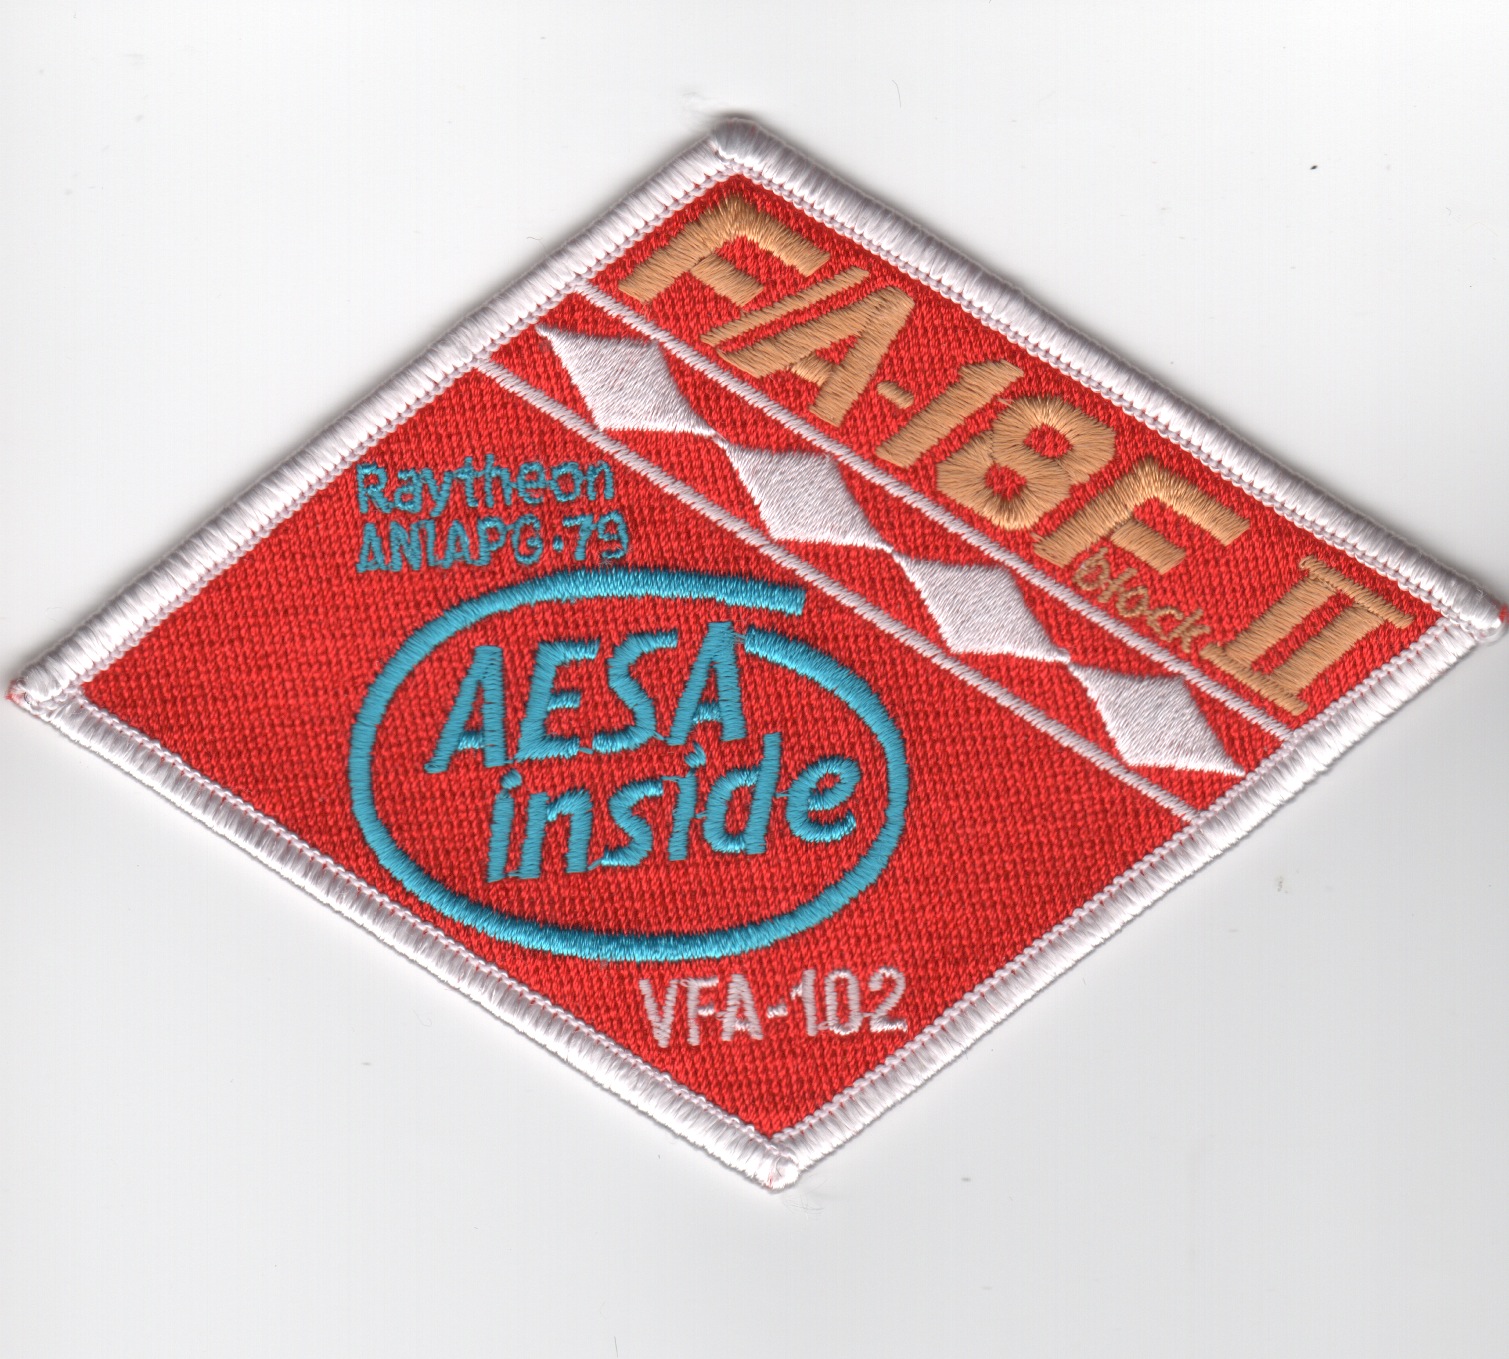 VFA-102 'F/A-18F 'AESA Inside' Patch